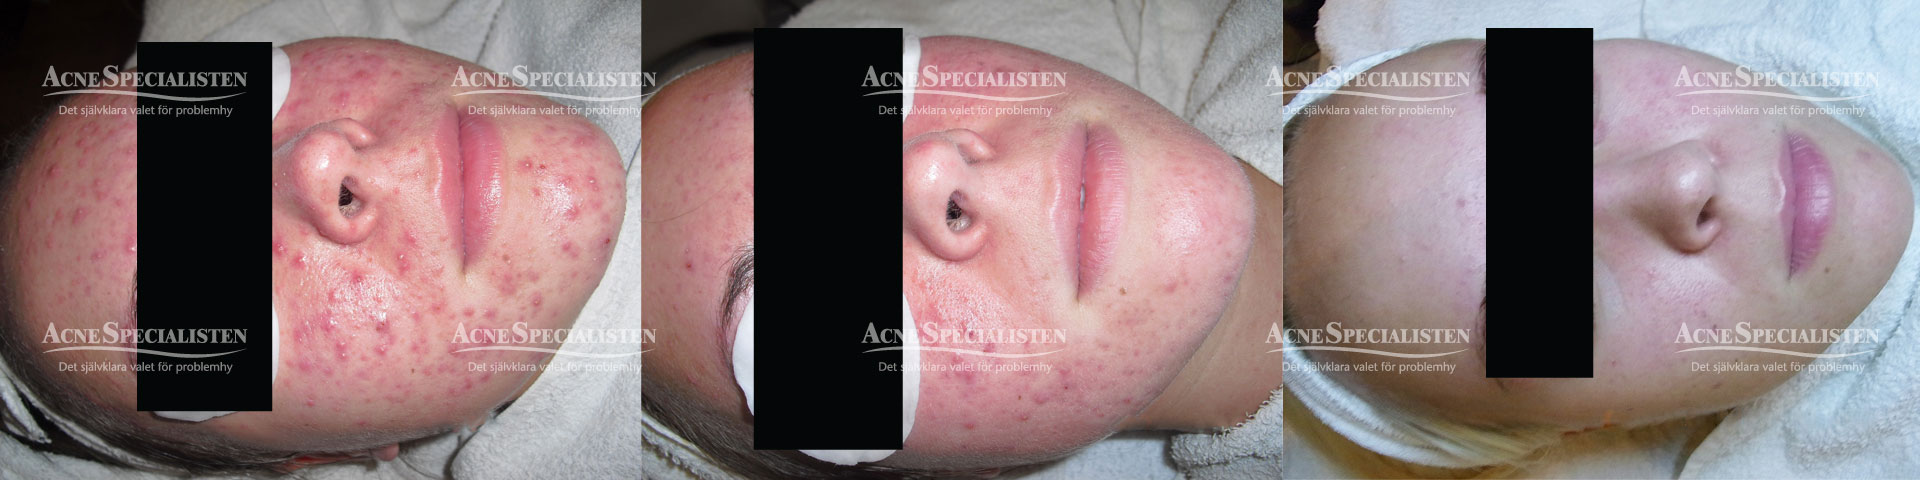 acne före och efterbilder